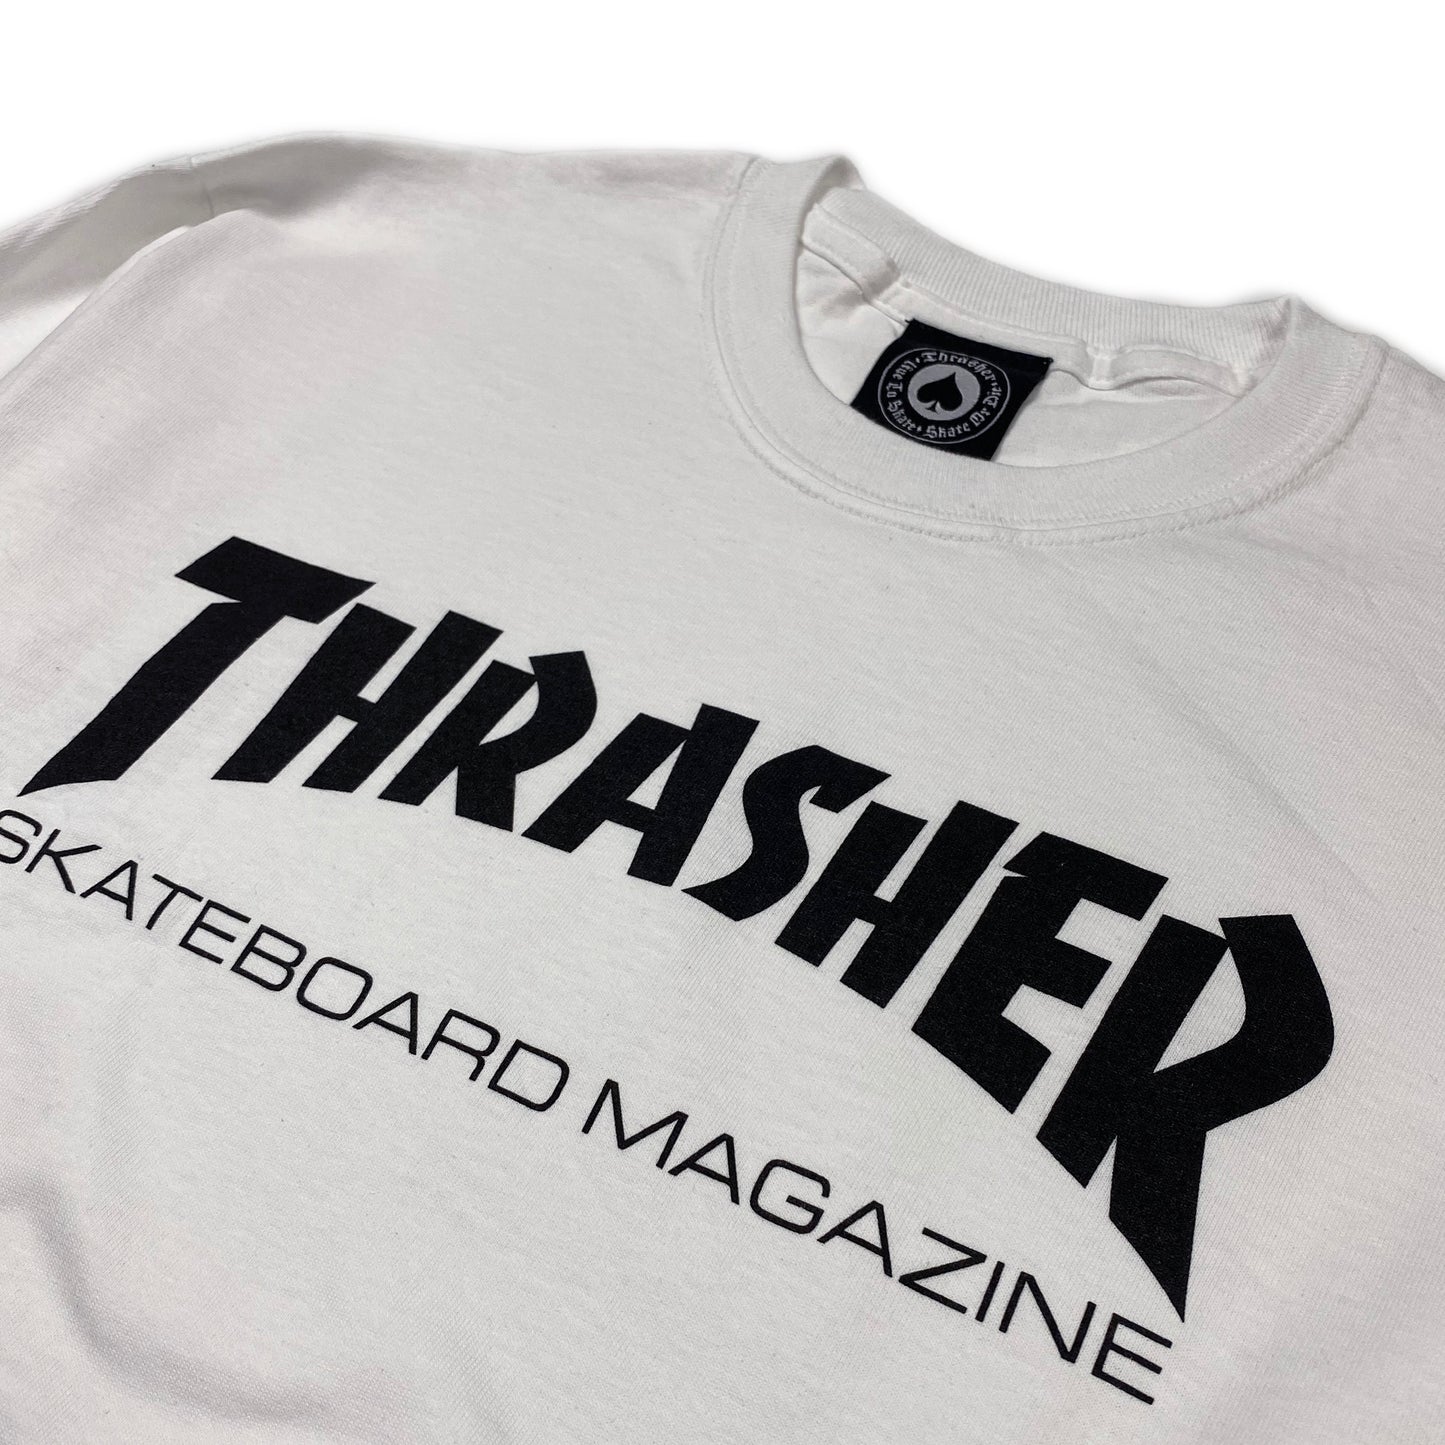 Thrasher Skate Mag Logo Long Sleeve T Shirt - White - Prime Delux Store